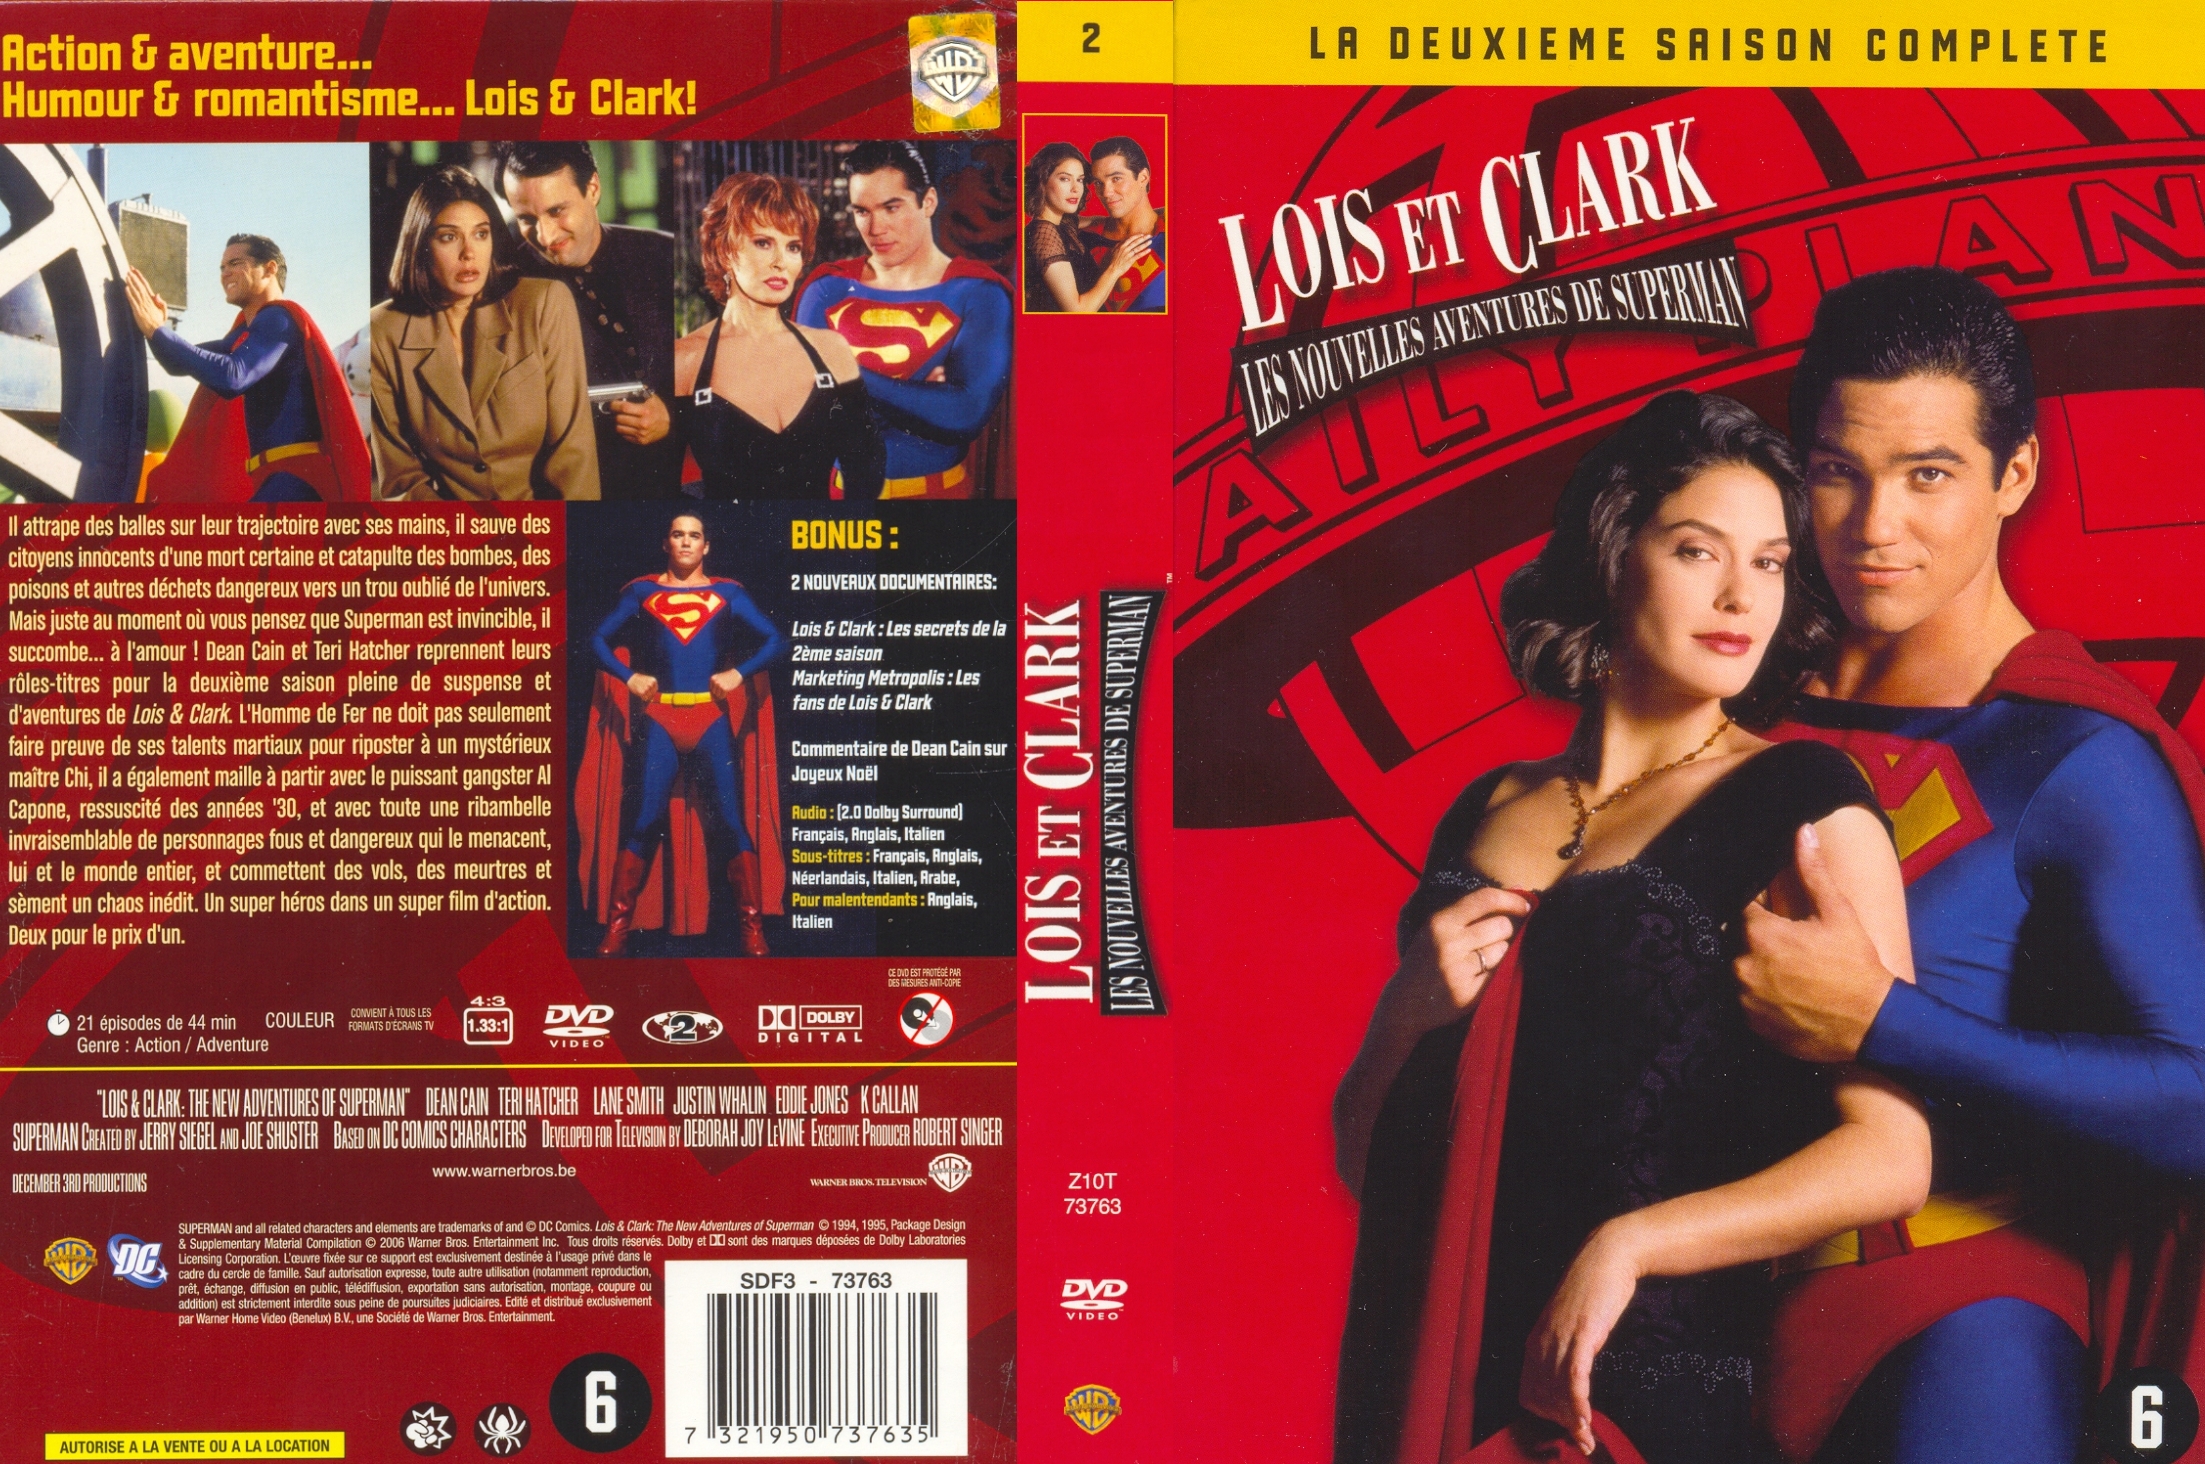 Jaquette DVD Lois et Clark Saison 2 COFFRET